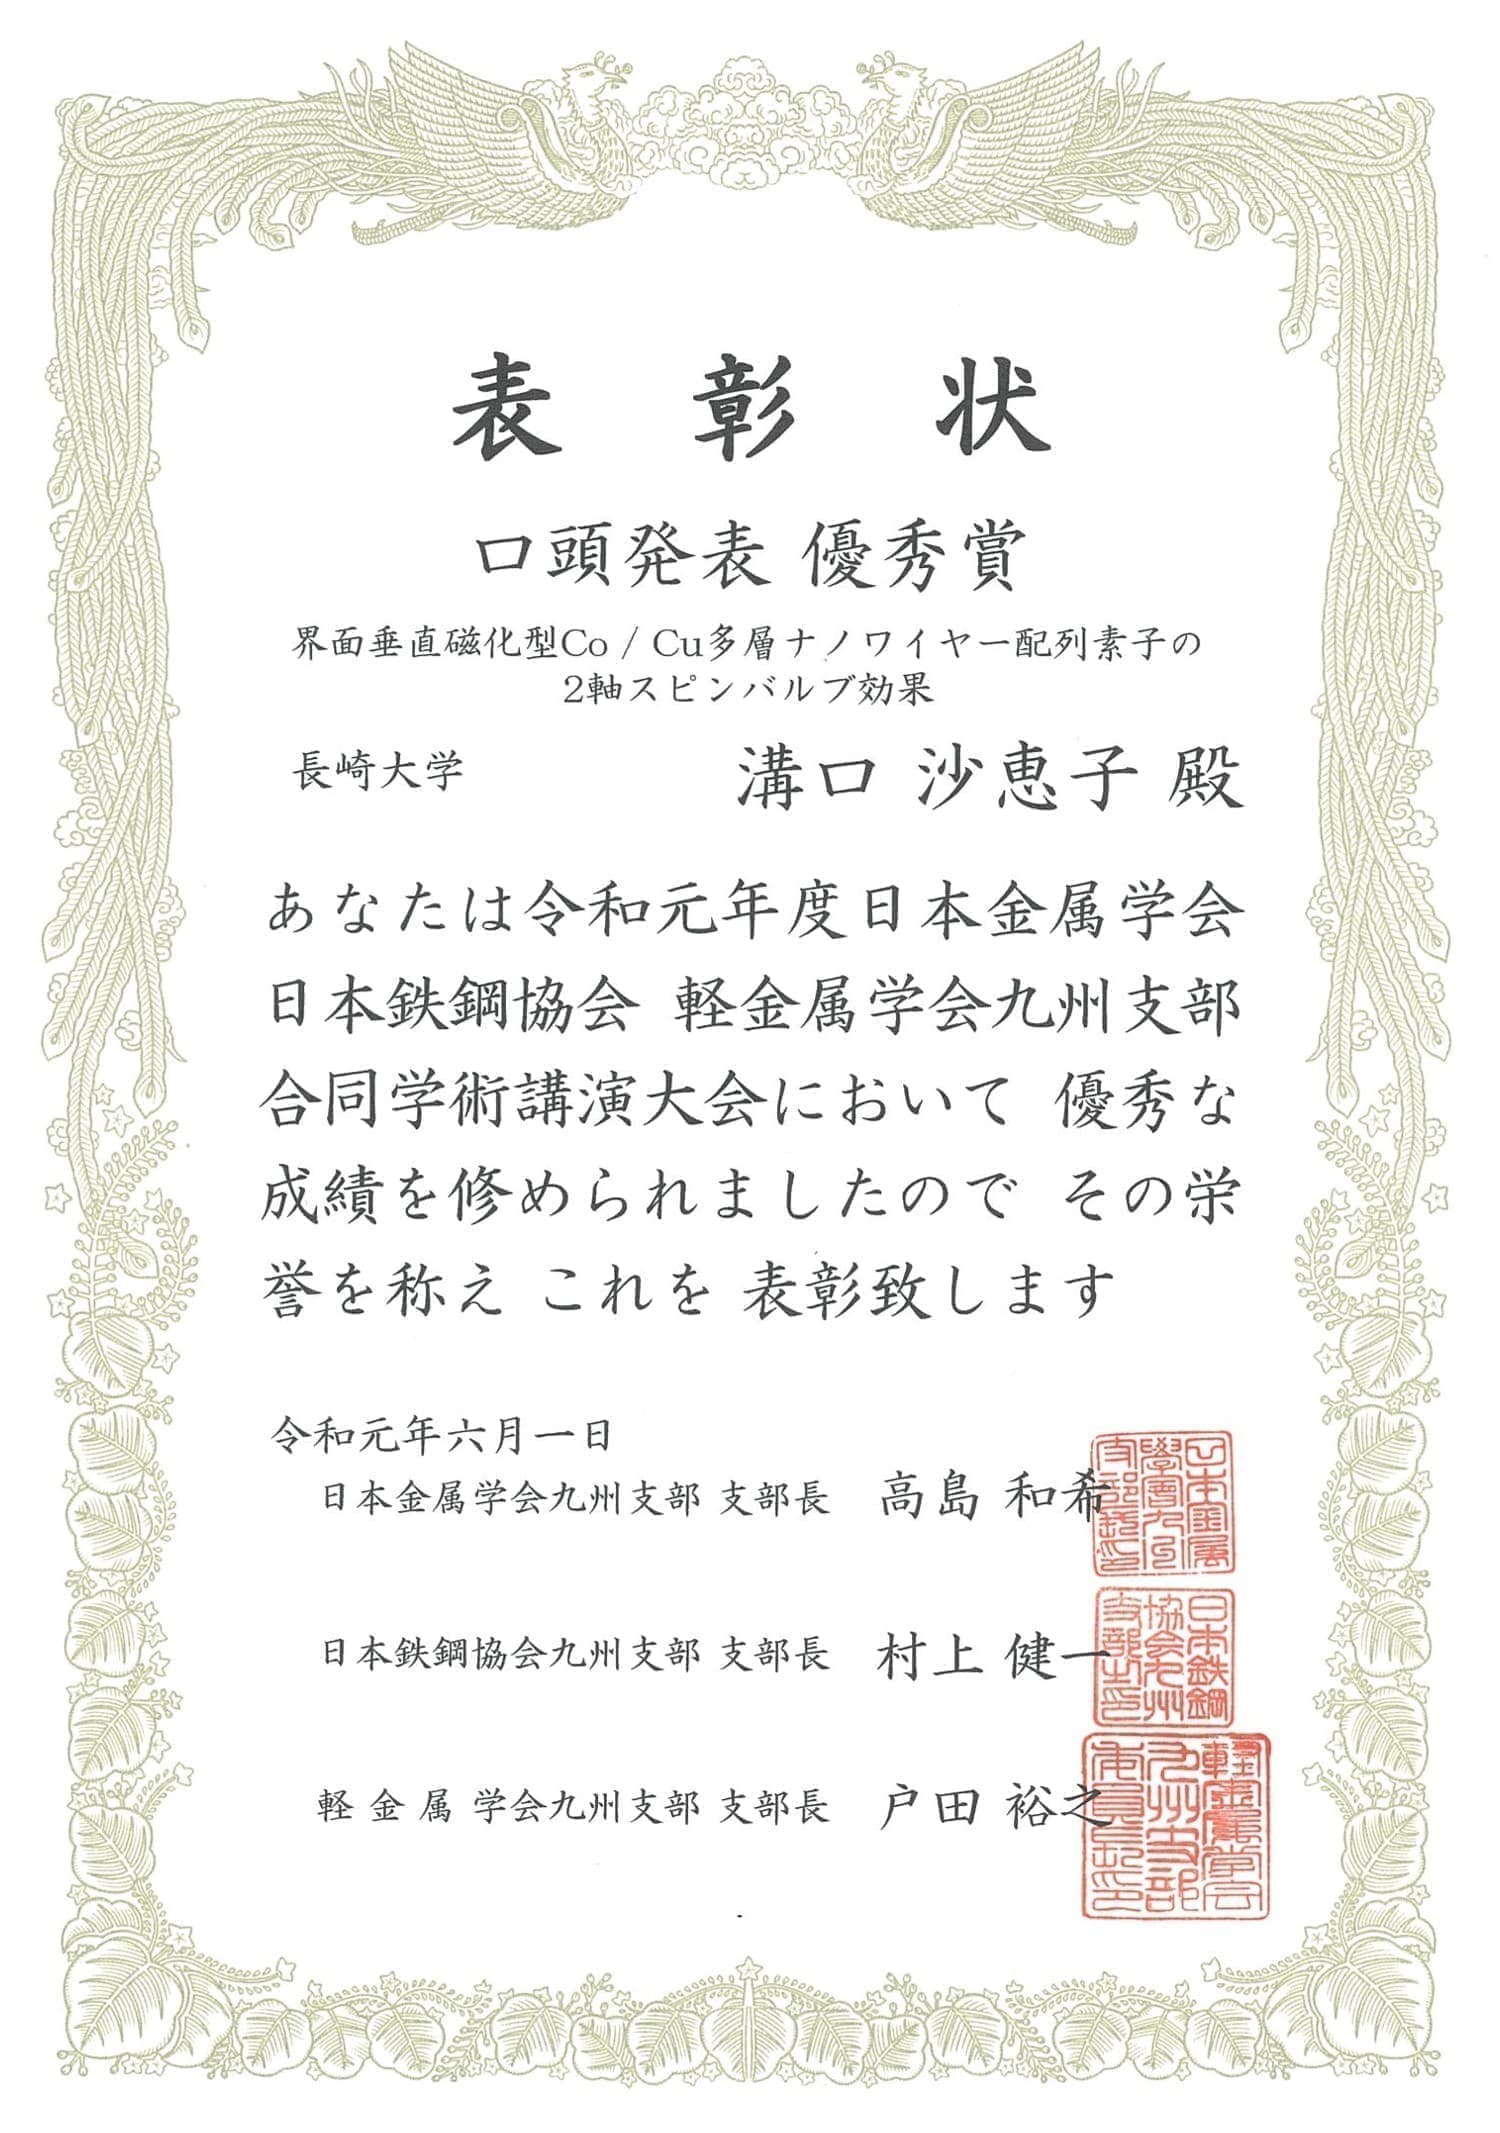 溝口沙恵子さん(M1)が、日本金属学会・日本鉄鋼協会・軽金属学会九州支部合同学術講演大会において、口頭発表優秀賞を受賞しました。2019/06/01